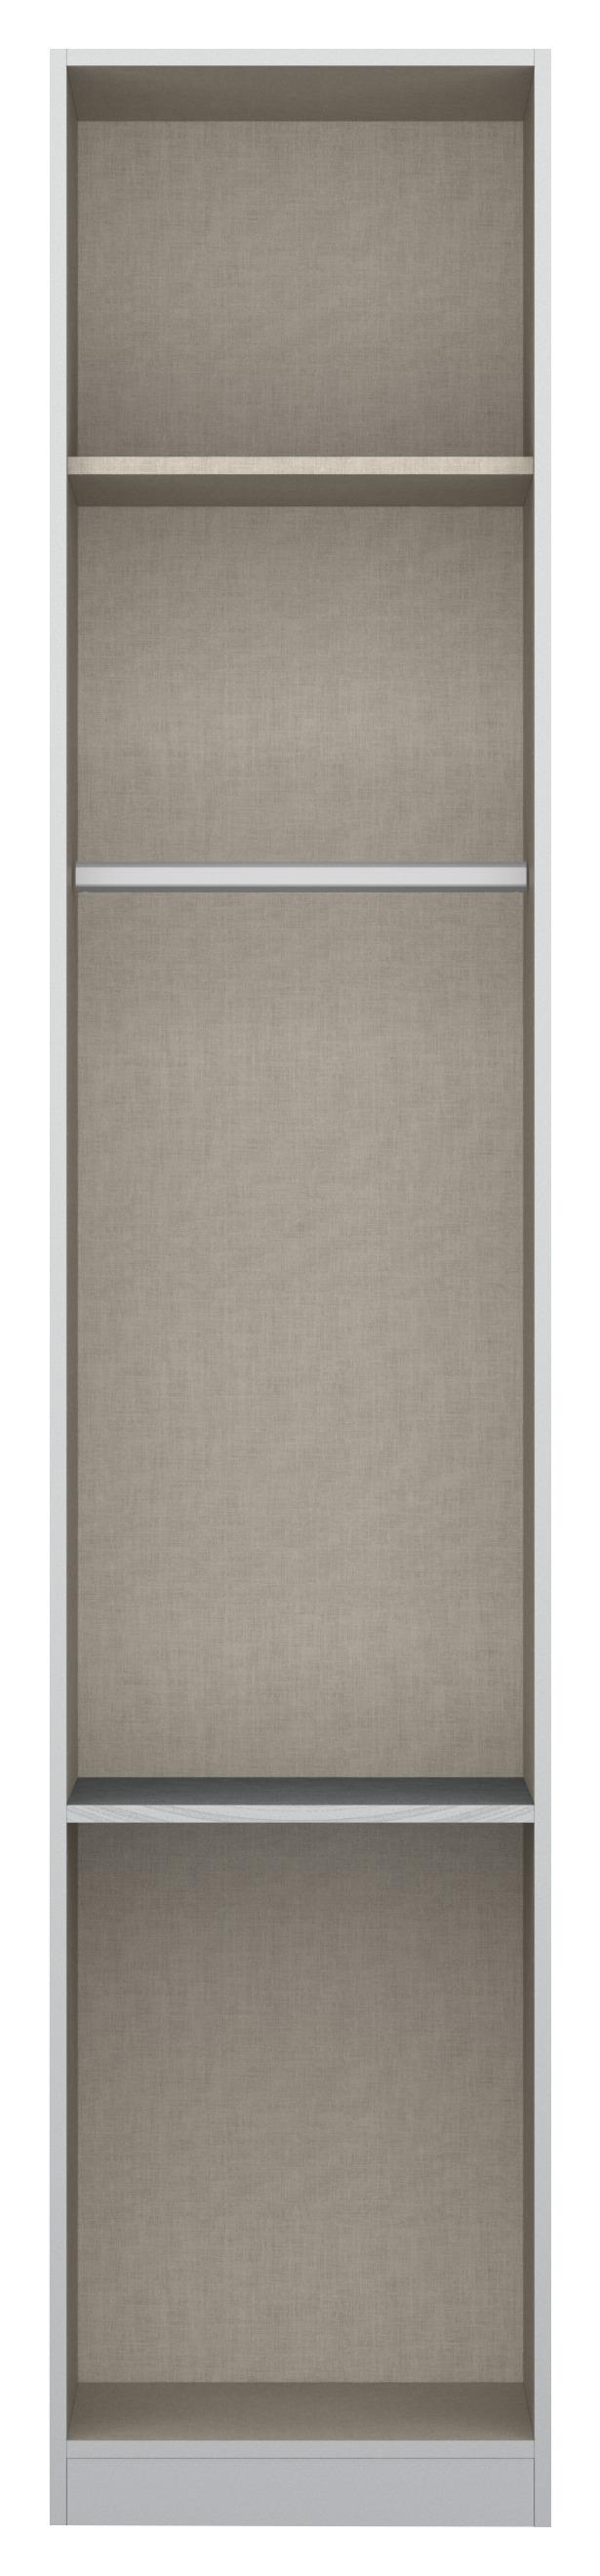 Skříň S Otočnými Dveřmi Alabama - světle šedá/barvy hliníku, Moderní, kompozitní dřevo (47/229/54cm)